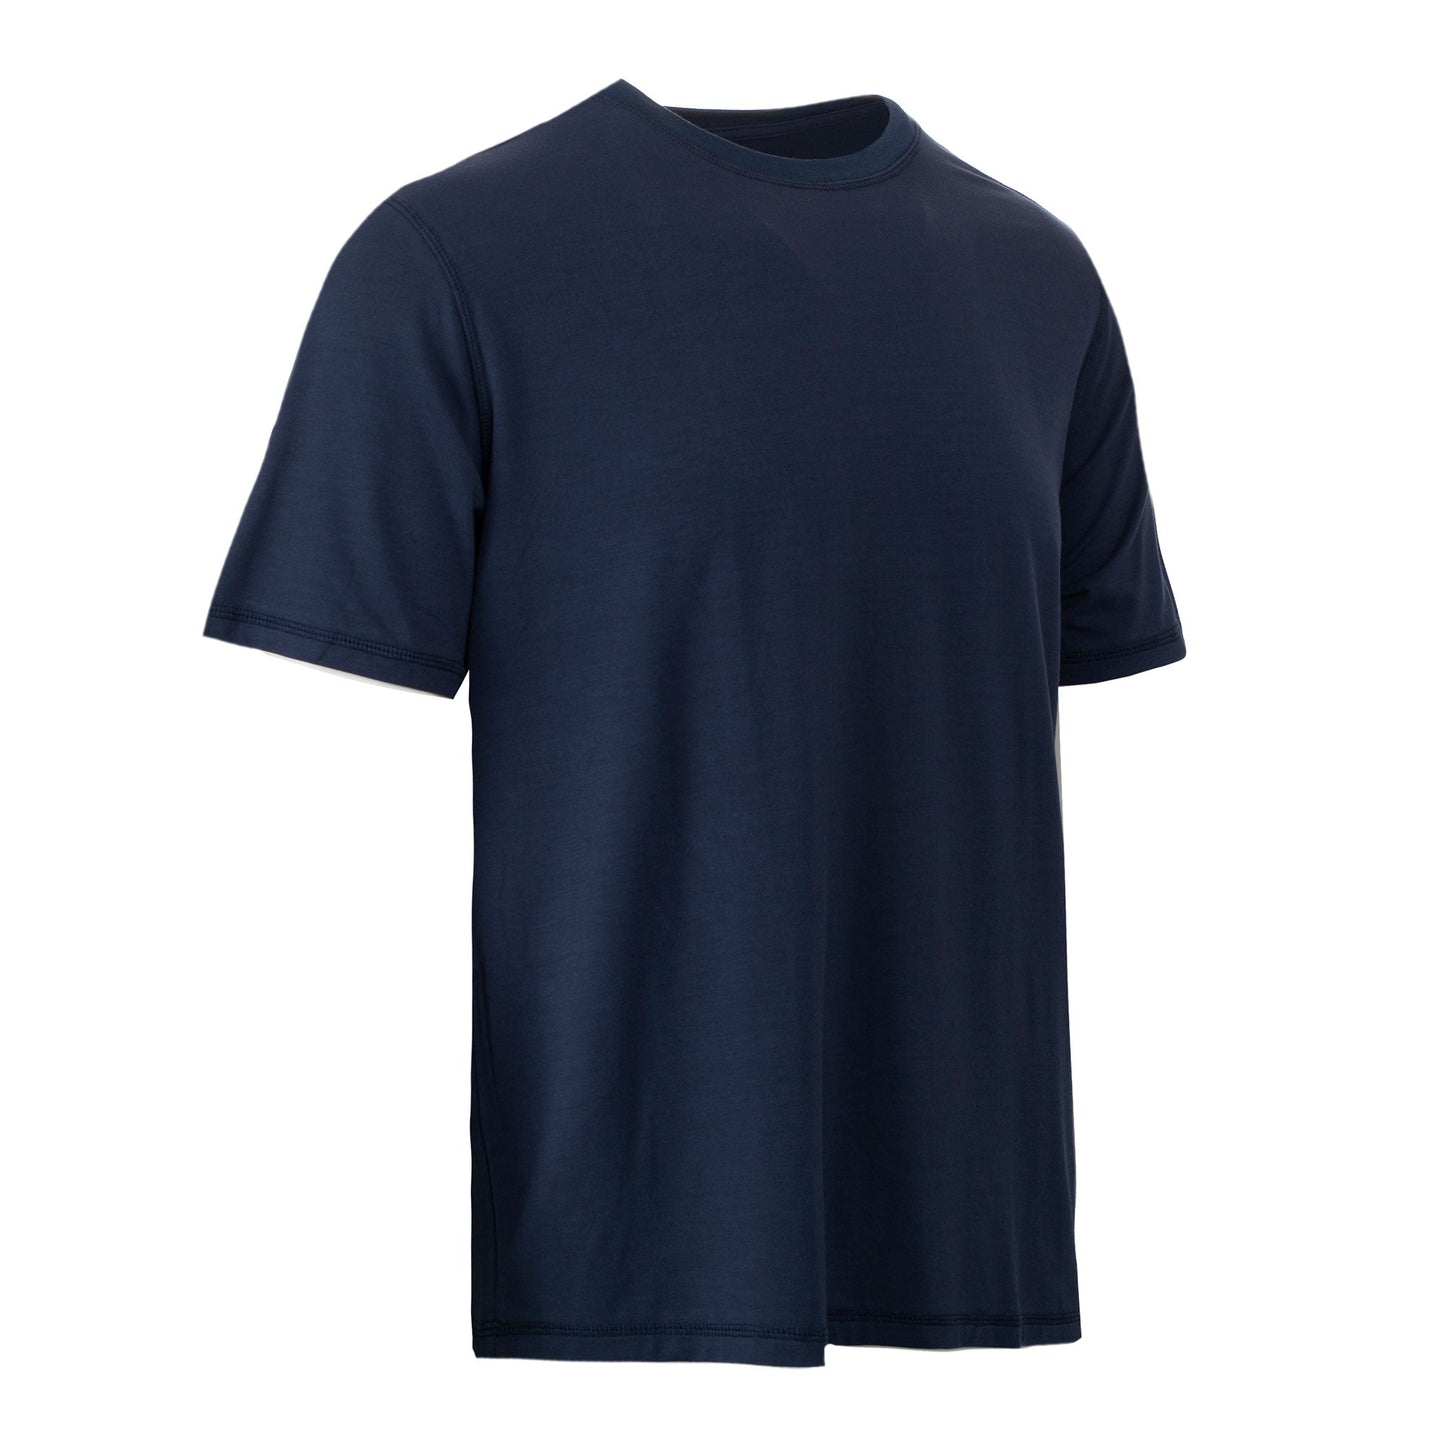 Chill Boys Butter Soft Bamboo T-Shirt - The Softest Men’s T-Shirt - Navy Blue